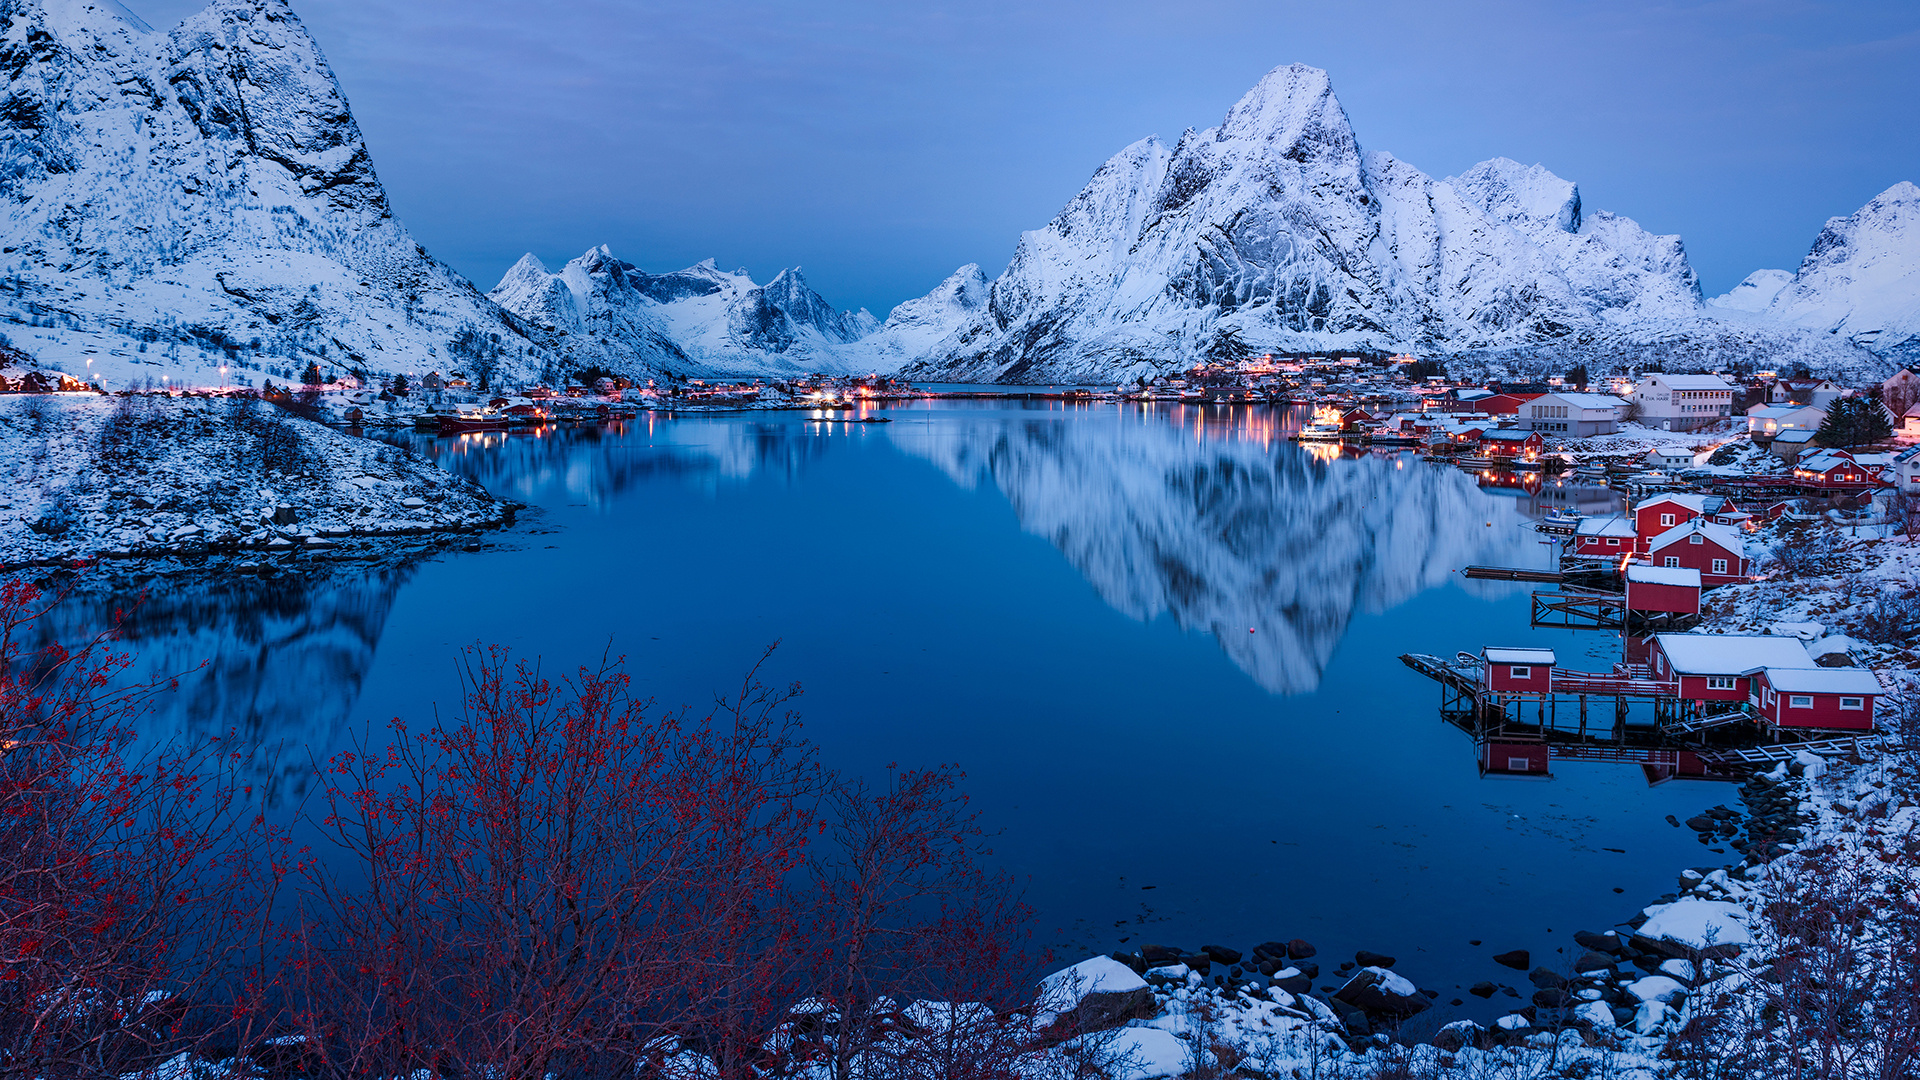 Mountain house, Snowy landscapes, Lofoten beauty, Norwegian fjords, 1920x1080 Full HD Desktop